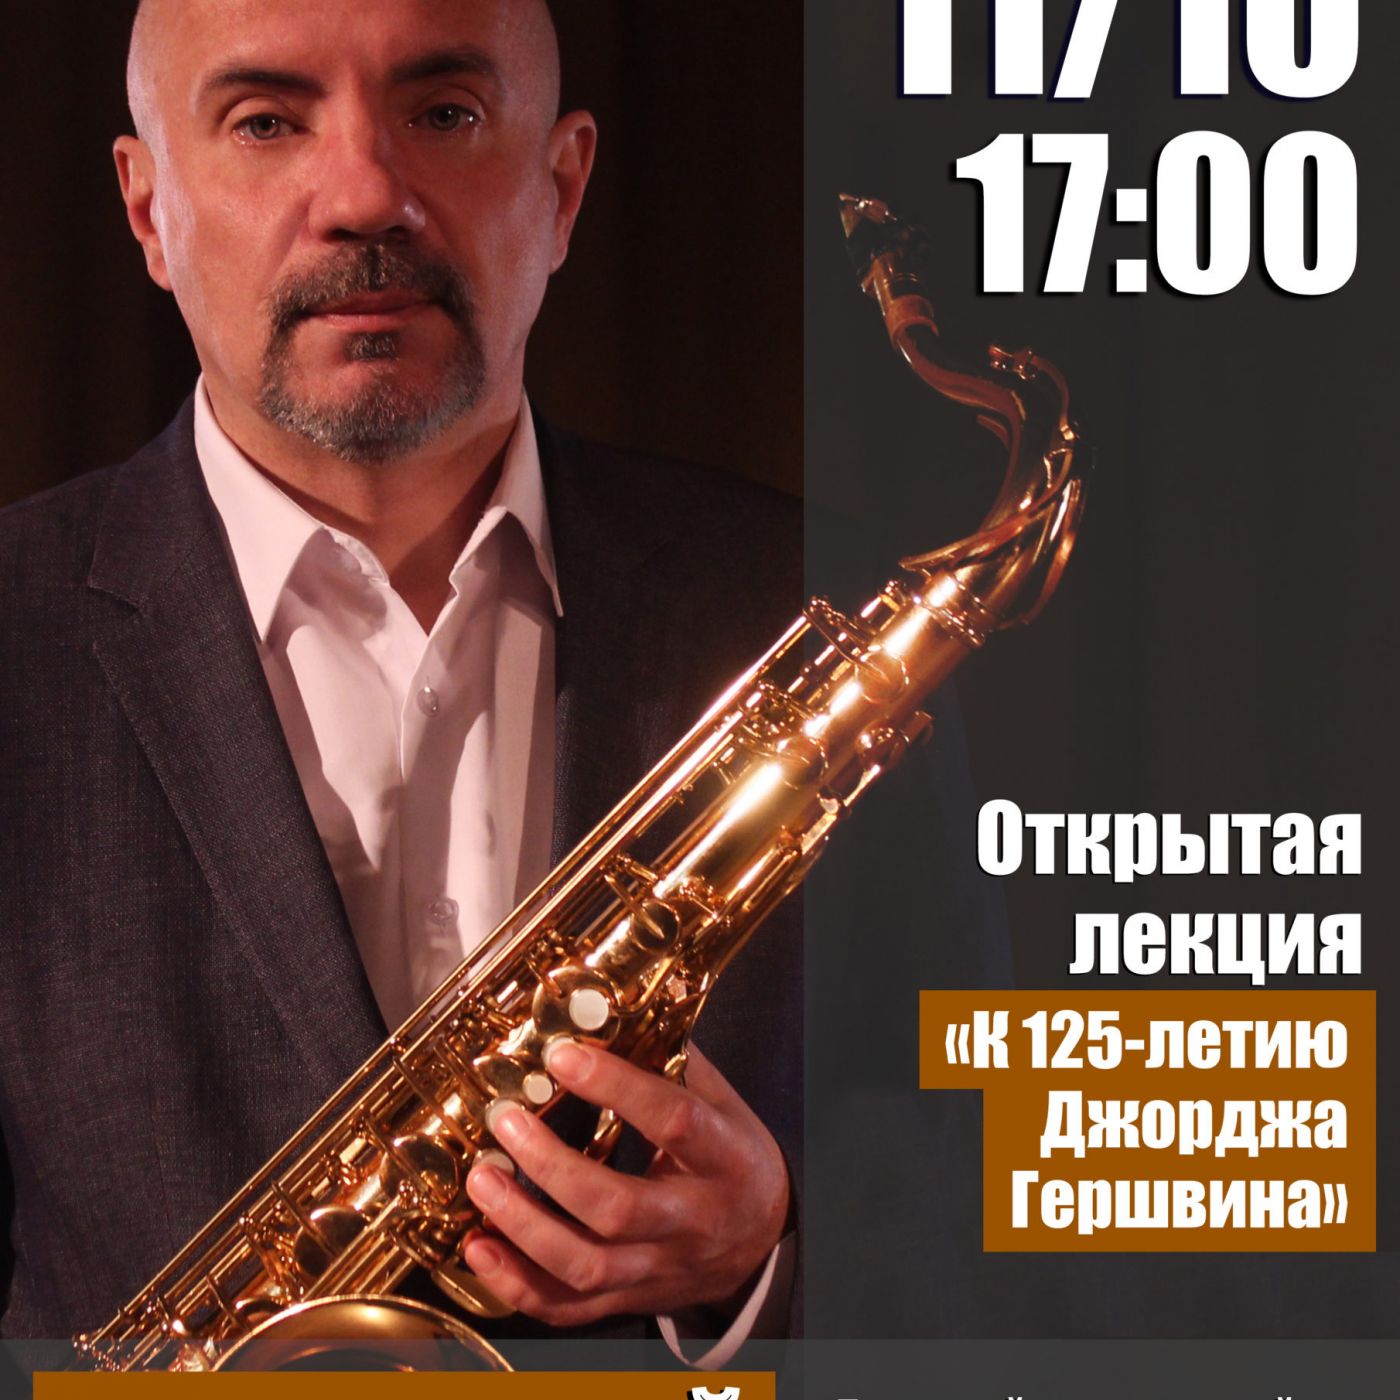 Аркадий Галковский (саксофон) приглашает на открытую лекцию “К 125-летию Джорджа Гершвина”